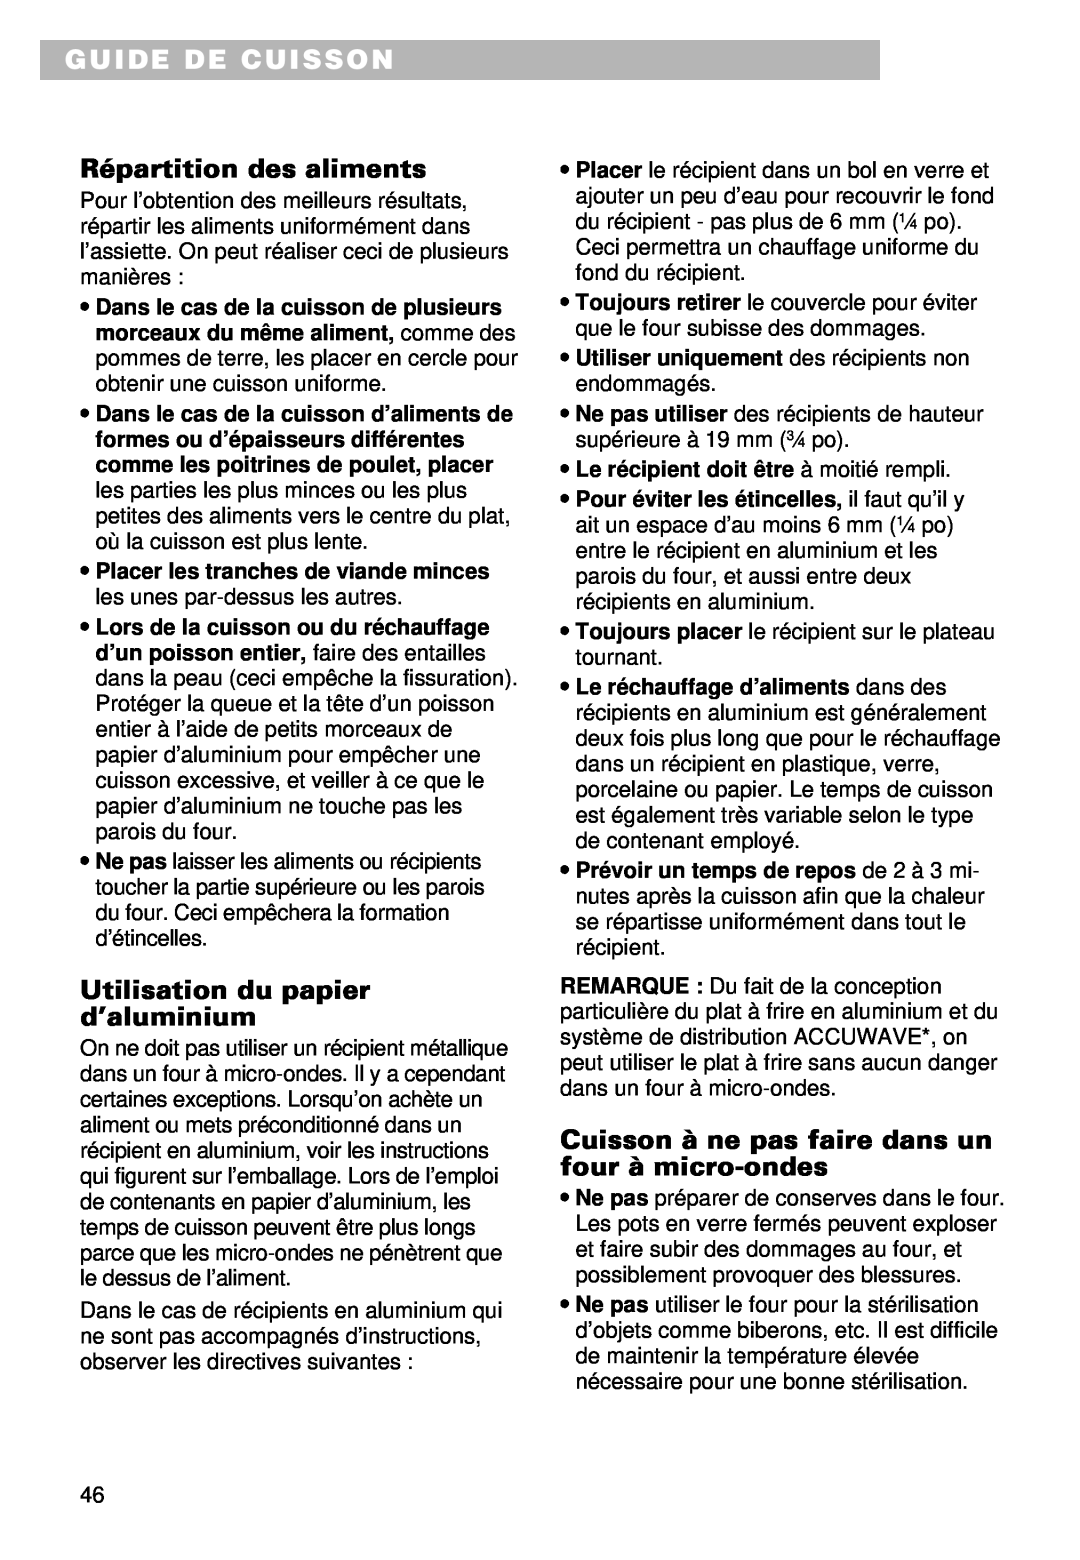 Whirlpool YMT9102SF, YMT9092SF Guide De Cuisson, Répartition des aliments, Utilisation du papier d’aluminium 